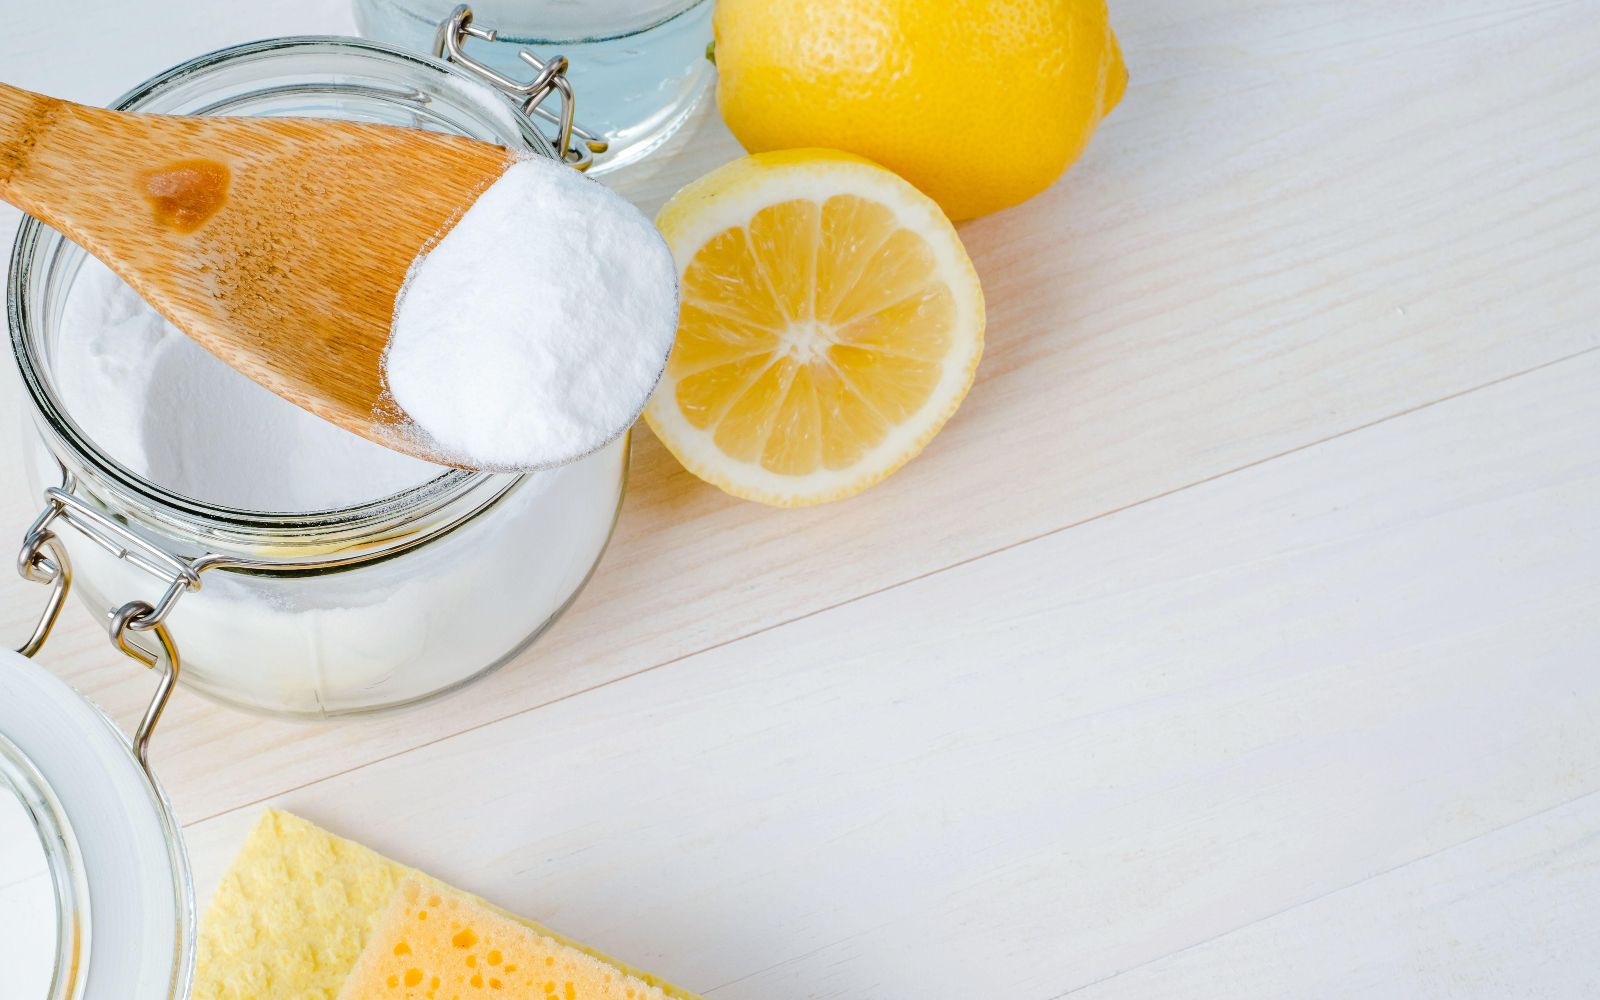 Раствор для мытья кухонных шкафов от жира в домашних условиях с лимонной кислотой и содой